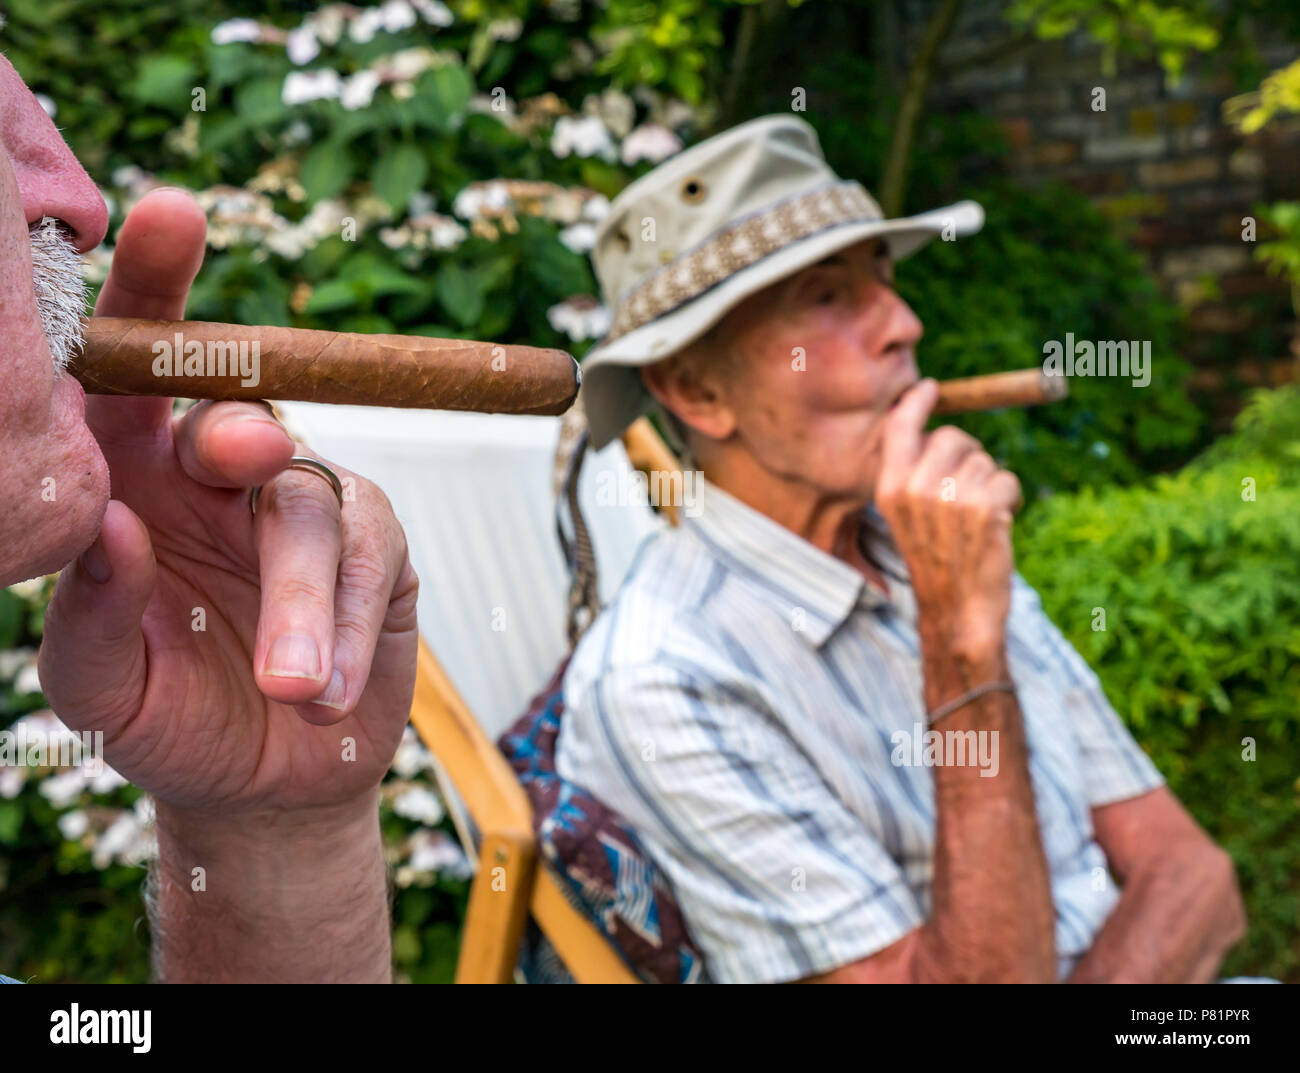 Cerca de dos altos hombres sentados en sillas de cubierta en un jardín de verano disfruta de fumar un cigarro cubano, Londres, Inglaterra, Reino Unido. Foto de stock